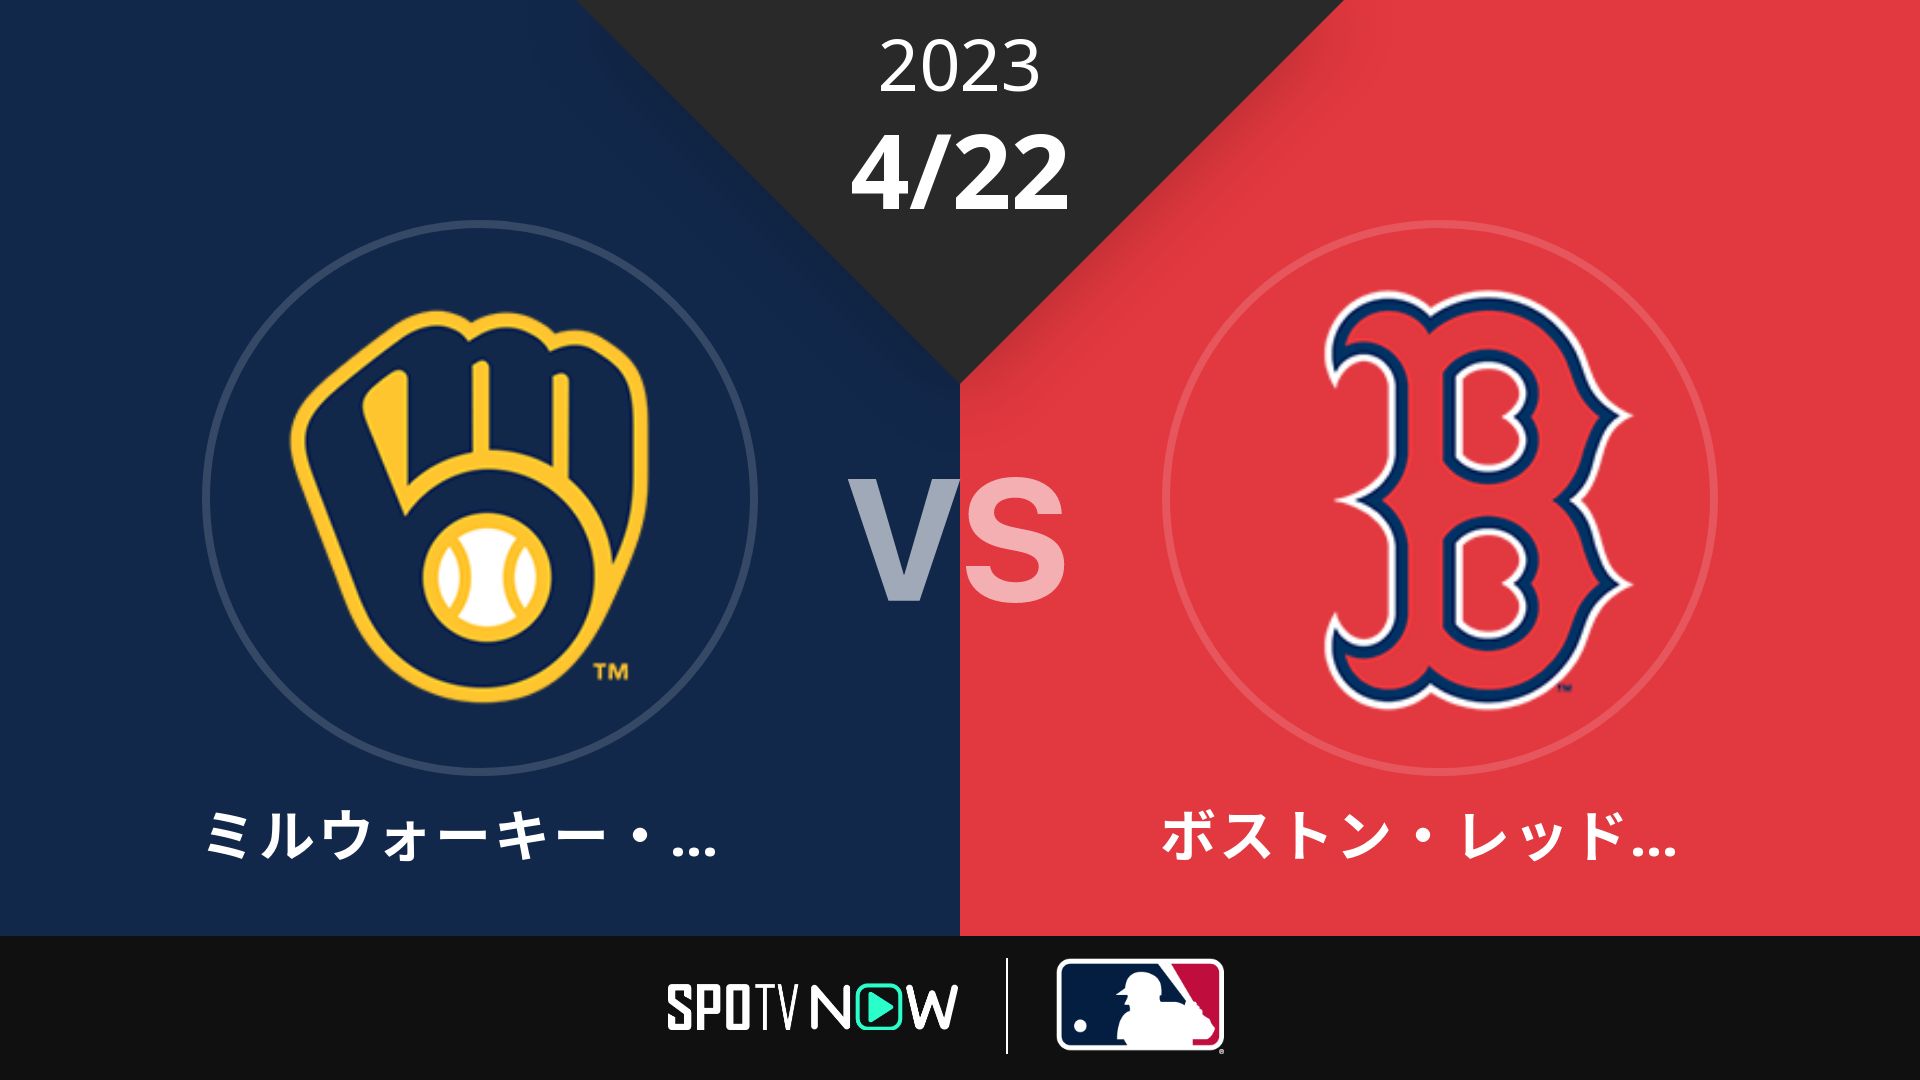 2023/4/22 ブリュワーズ vs Rソックス [MLB]